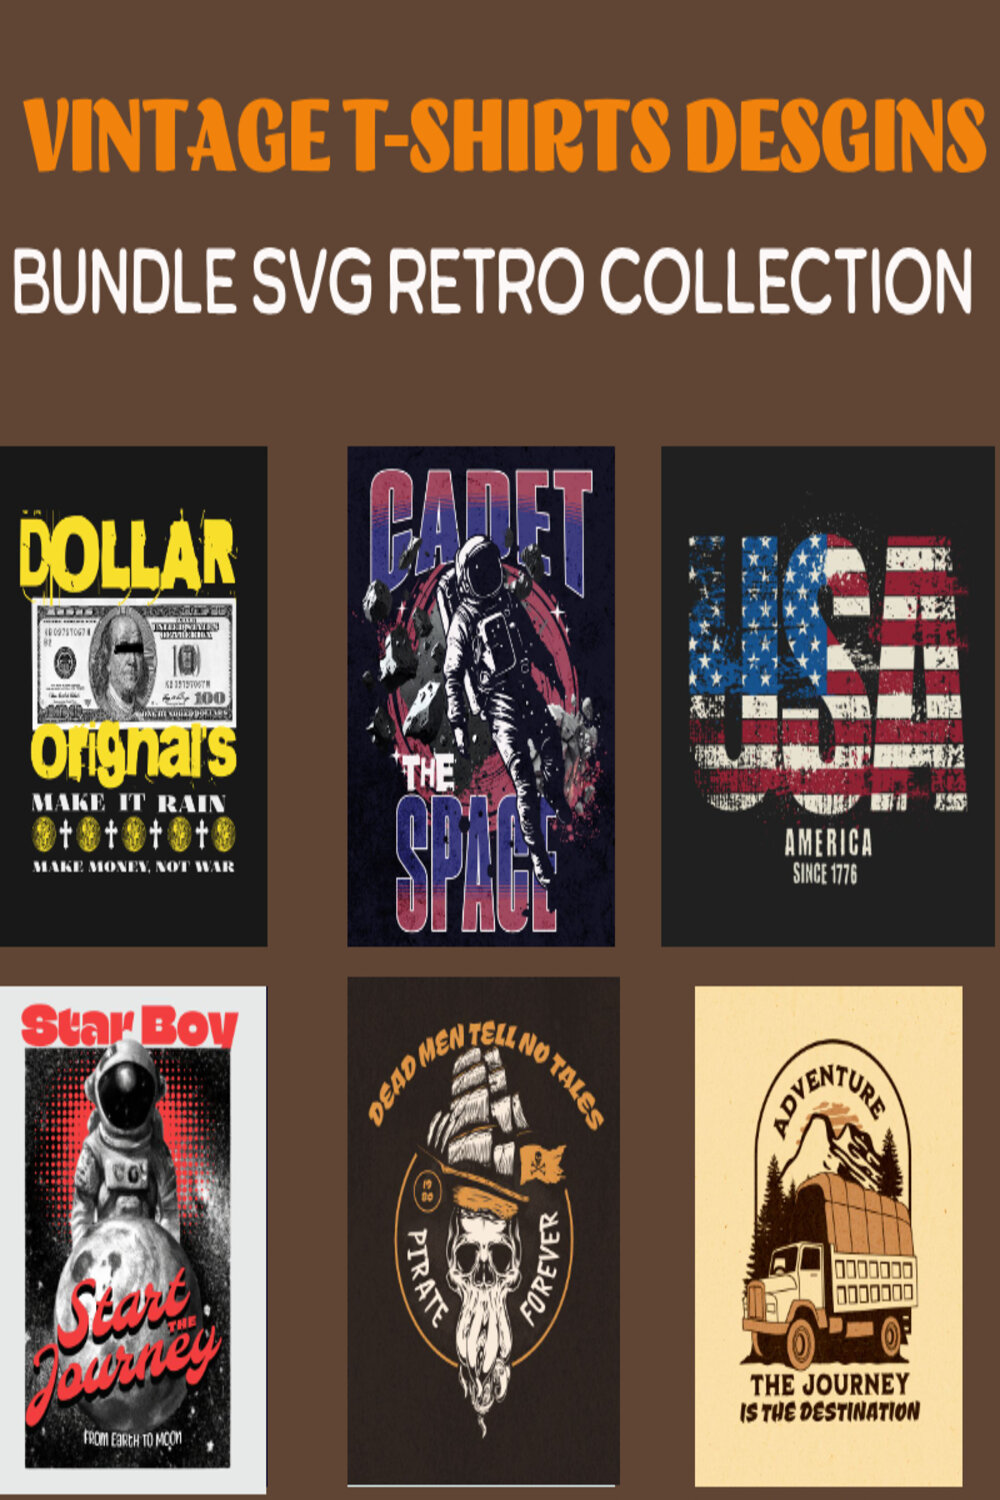 12 Vintage T-Shirt Design Bundle SVG Retro Collection pinterest preview image.